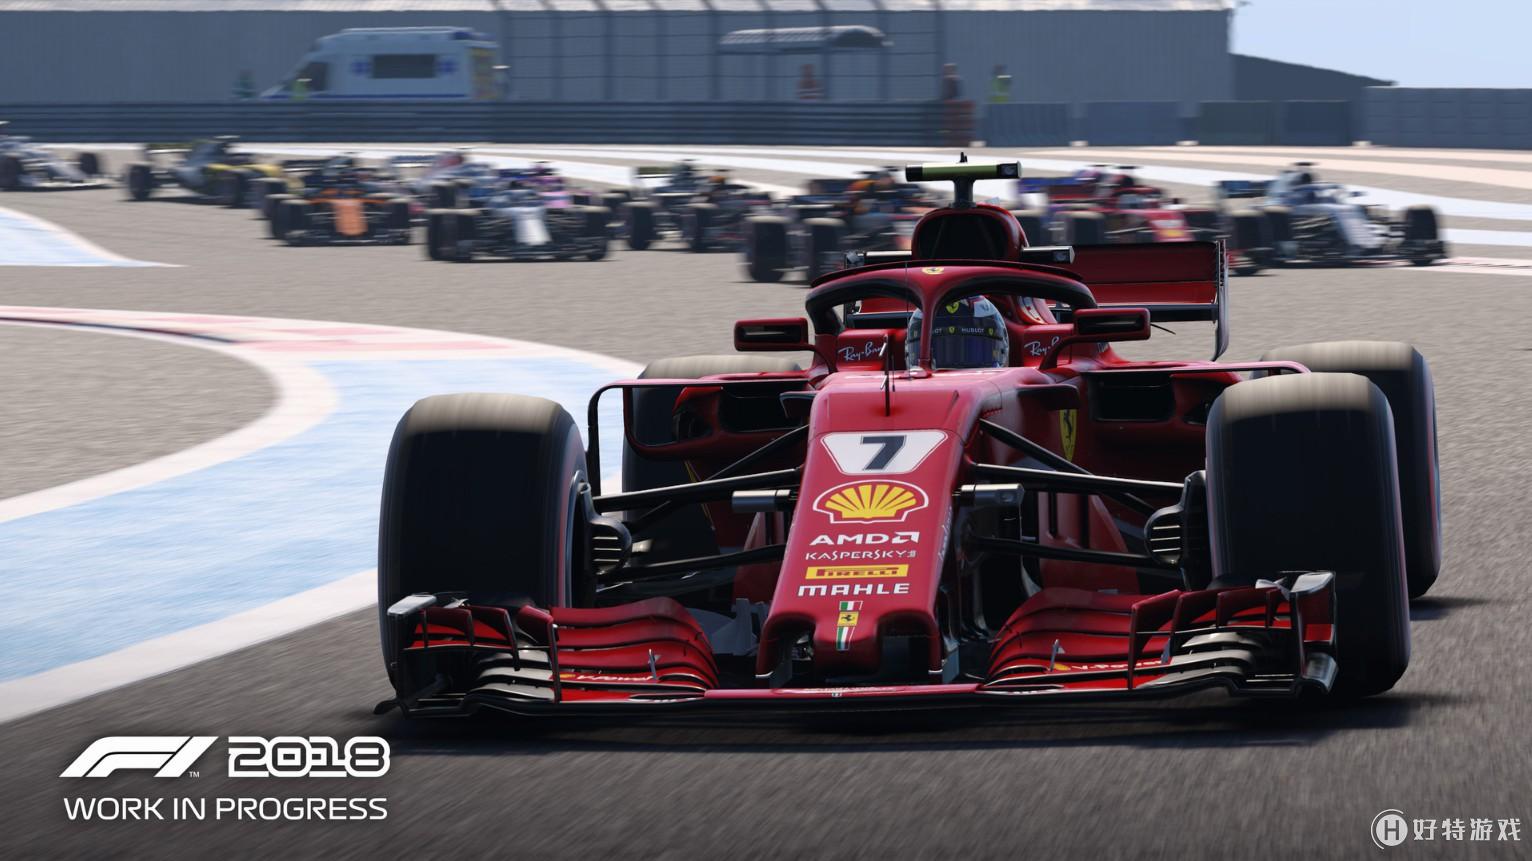 《F1 2018》游戏截图公开 更多车型更多选择